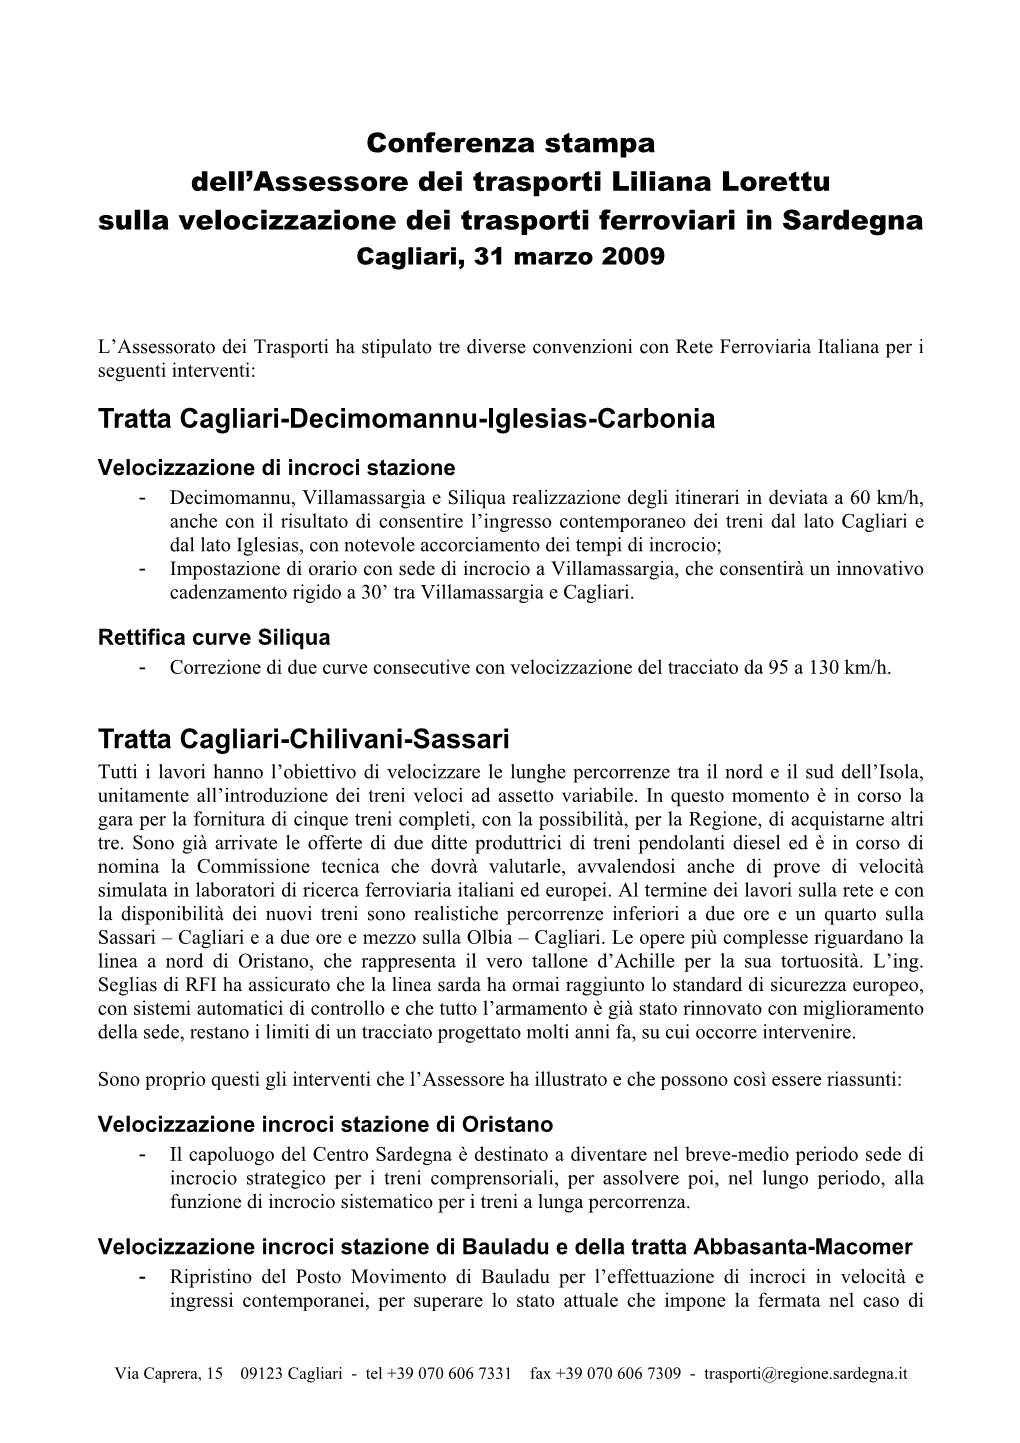 Velocizzazione Dei Trasporti Ferroviari in Sardegna Cagliari, 31 Marzo 2009